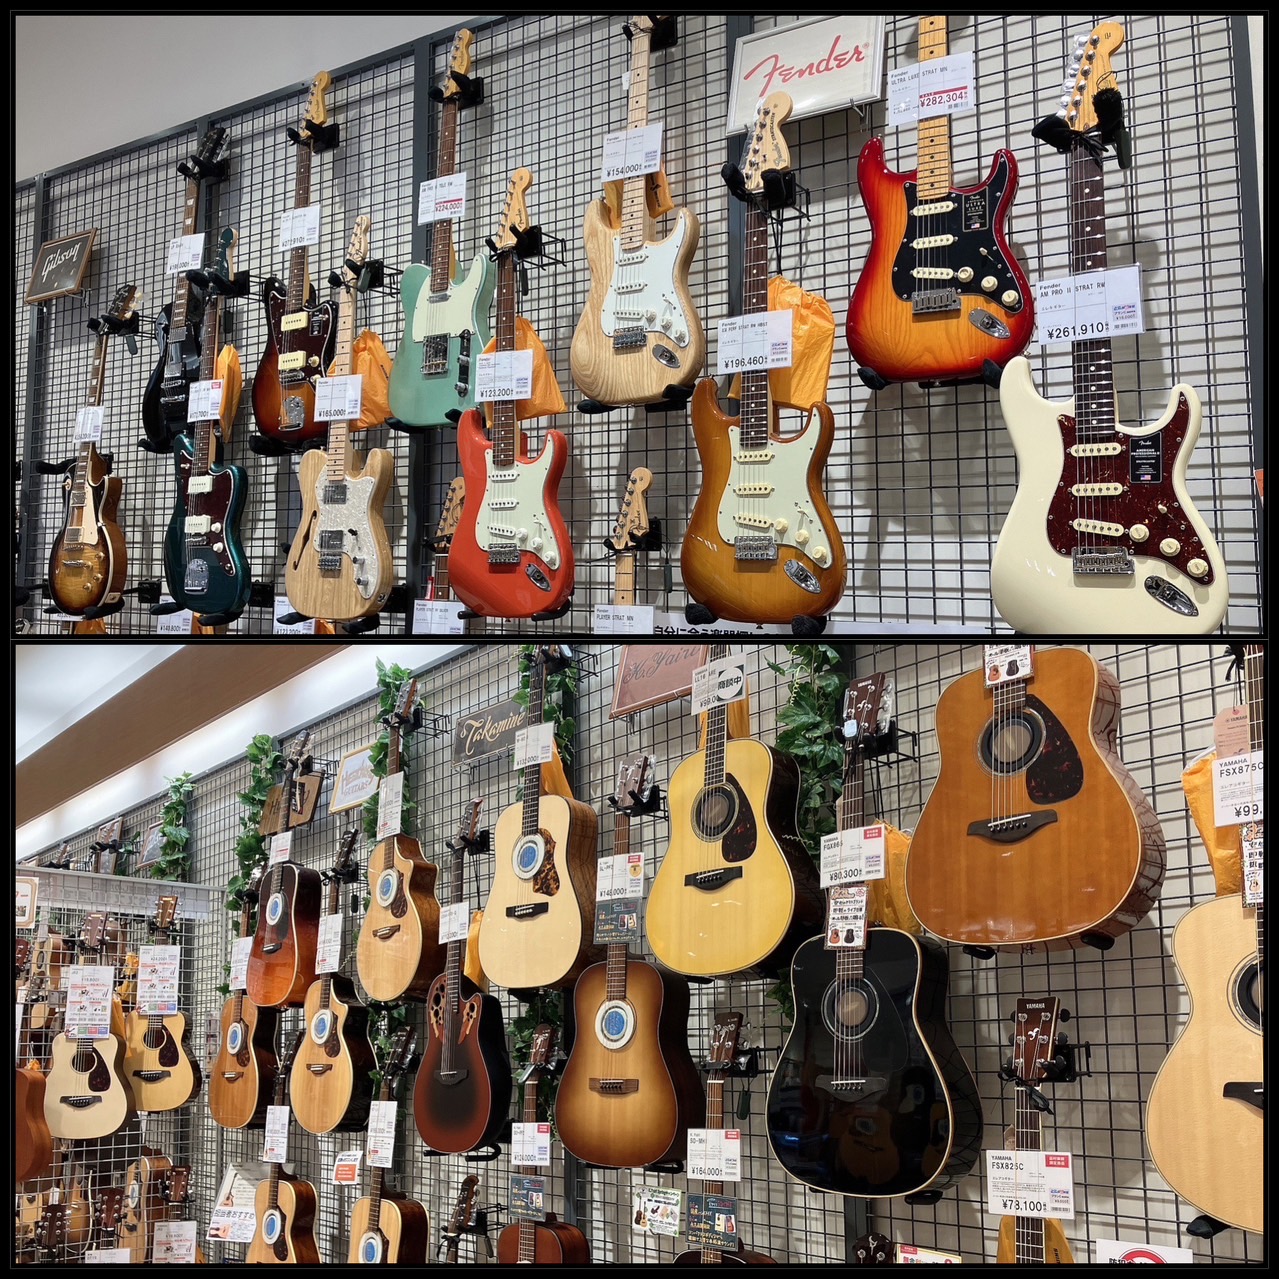 ギター・ベースを選ぶなら展示台数多数のイオンレイクタウン店へ！ 島村楽器イオンレイクタウン店ではアコースティックギター、エレキギター、エレキベースを常時約200本以上展示しております。 関東地方でギター・ベースをお探しの方、定番モデルから上位機種まで幅広い品揃えを一台一台弾き比べていただけます。 レ […]